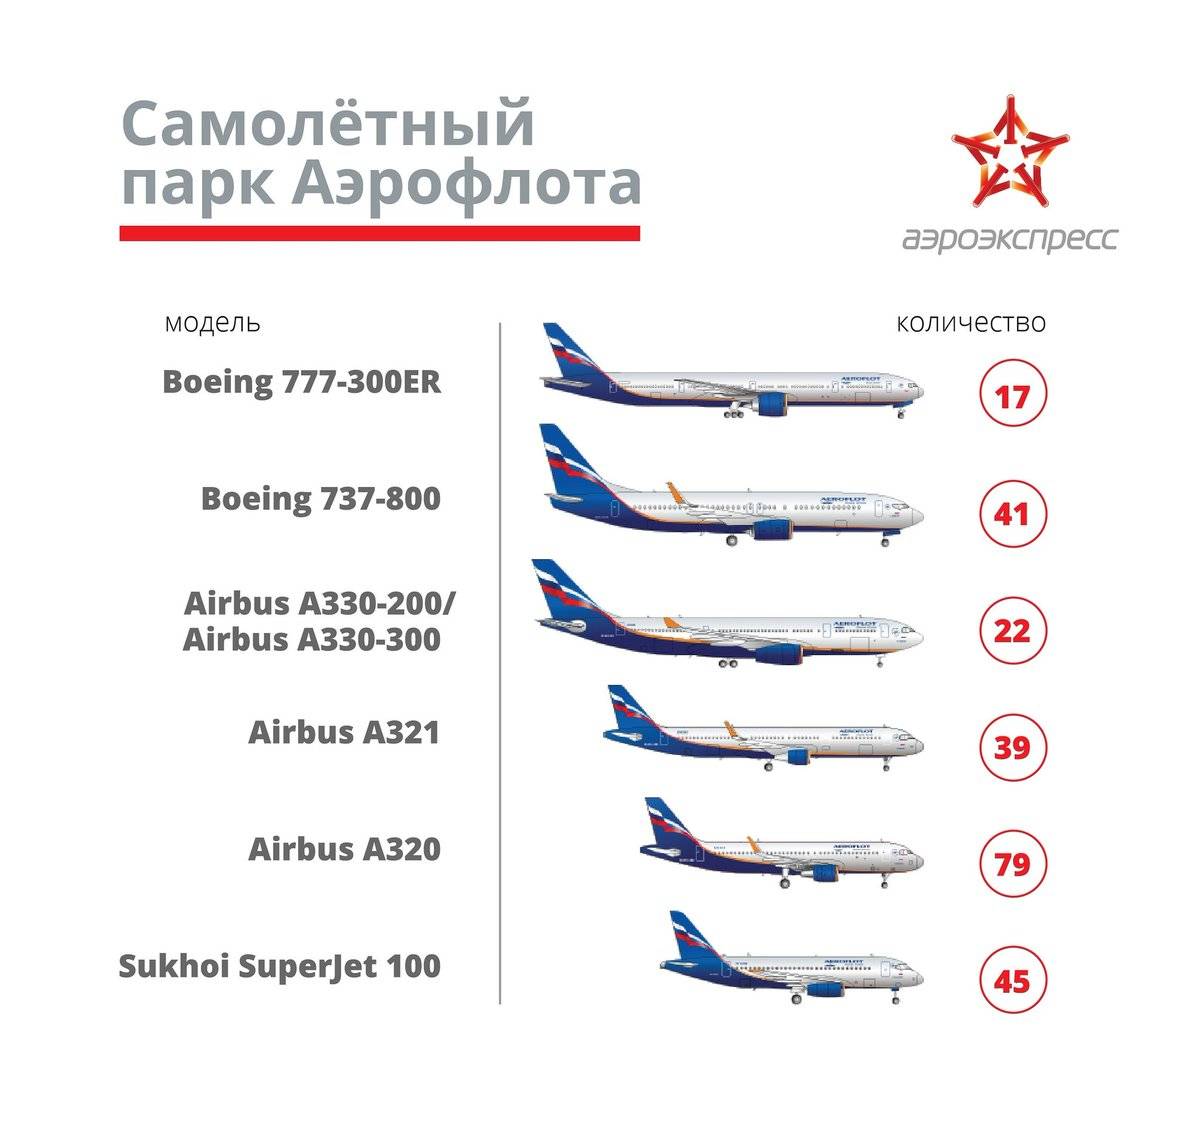 Какие самолеты у Аэрофлота — авиапарк